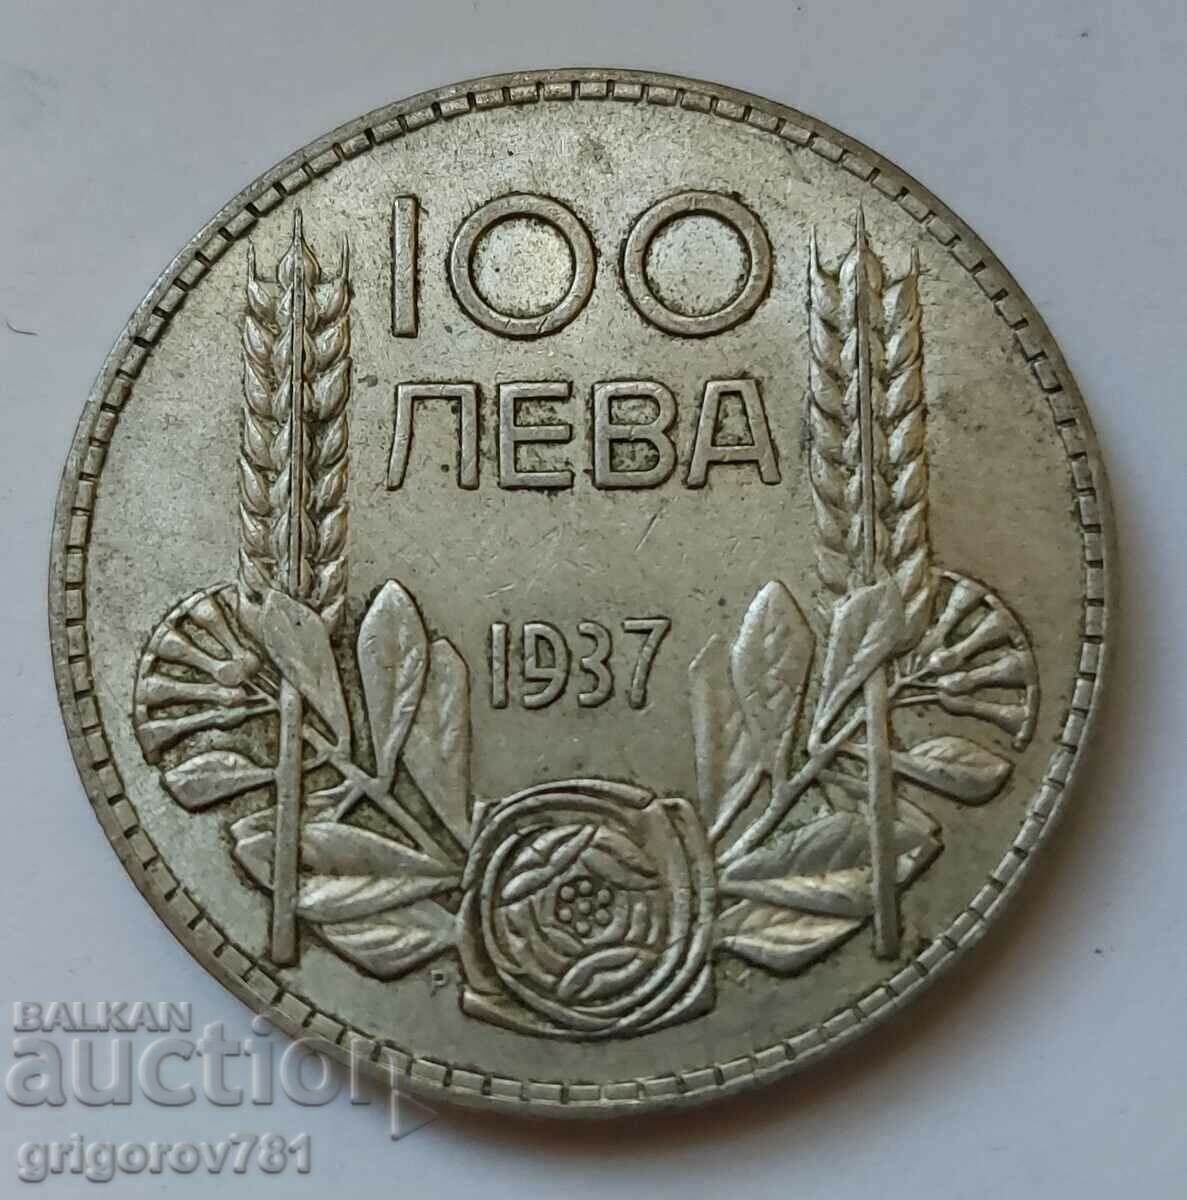 Ασήμι 100 λέβα Βουλγαρία 1937 - ασημένιο νόμισμα #85